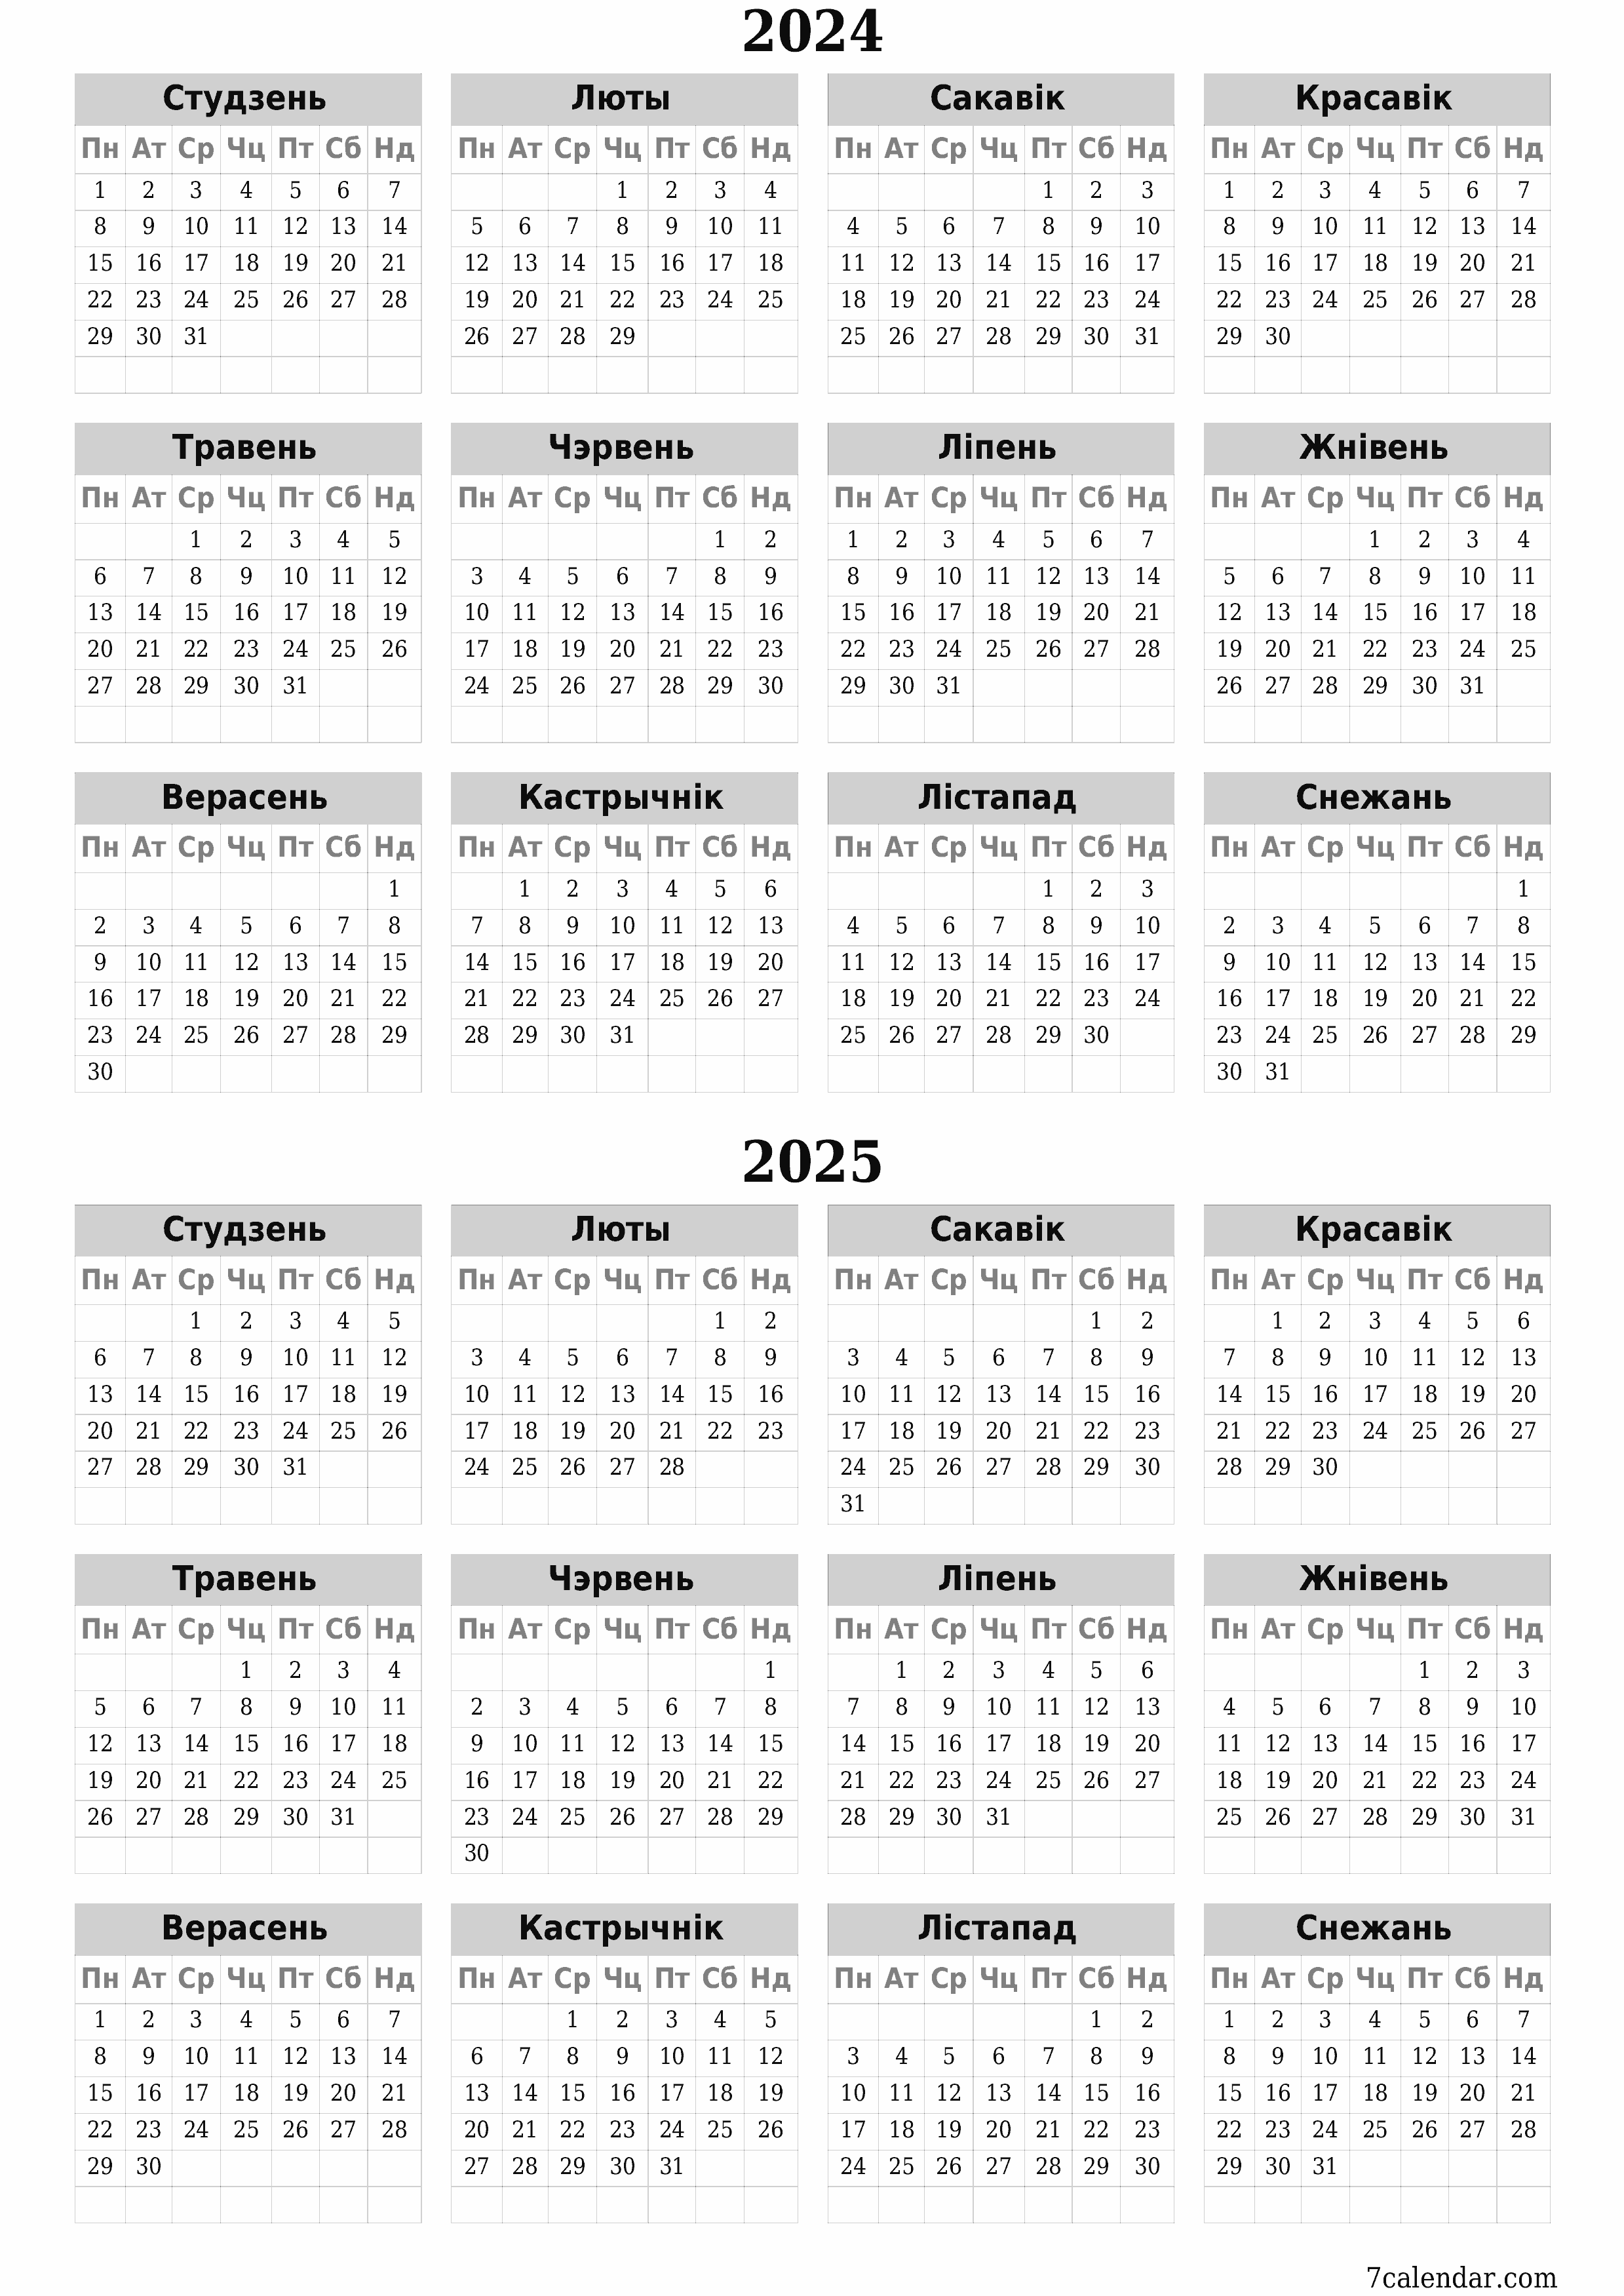  для друку насценны шаблон календара бясплатны вертыкальны Штогадовы каляндар Верасень (Вер) 2024